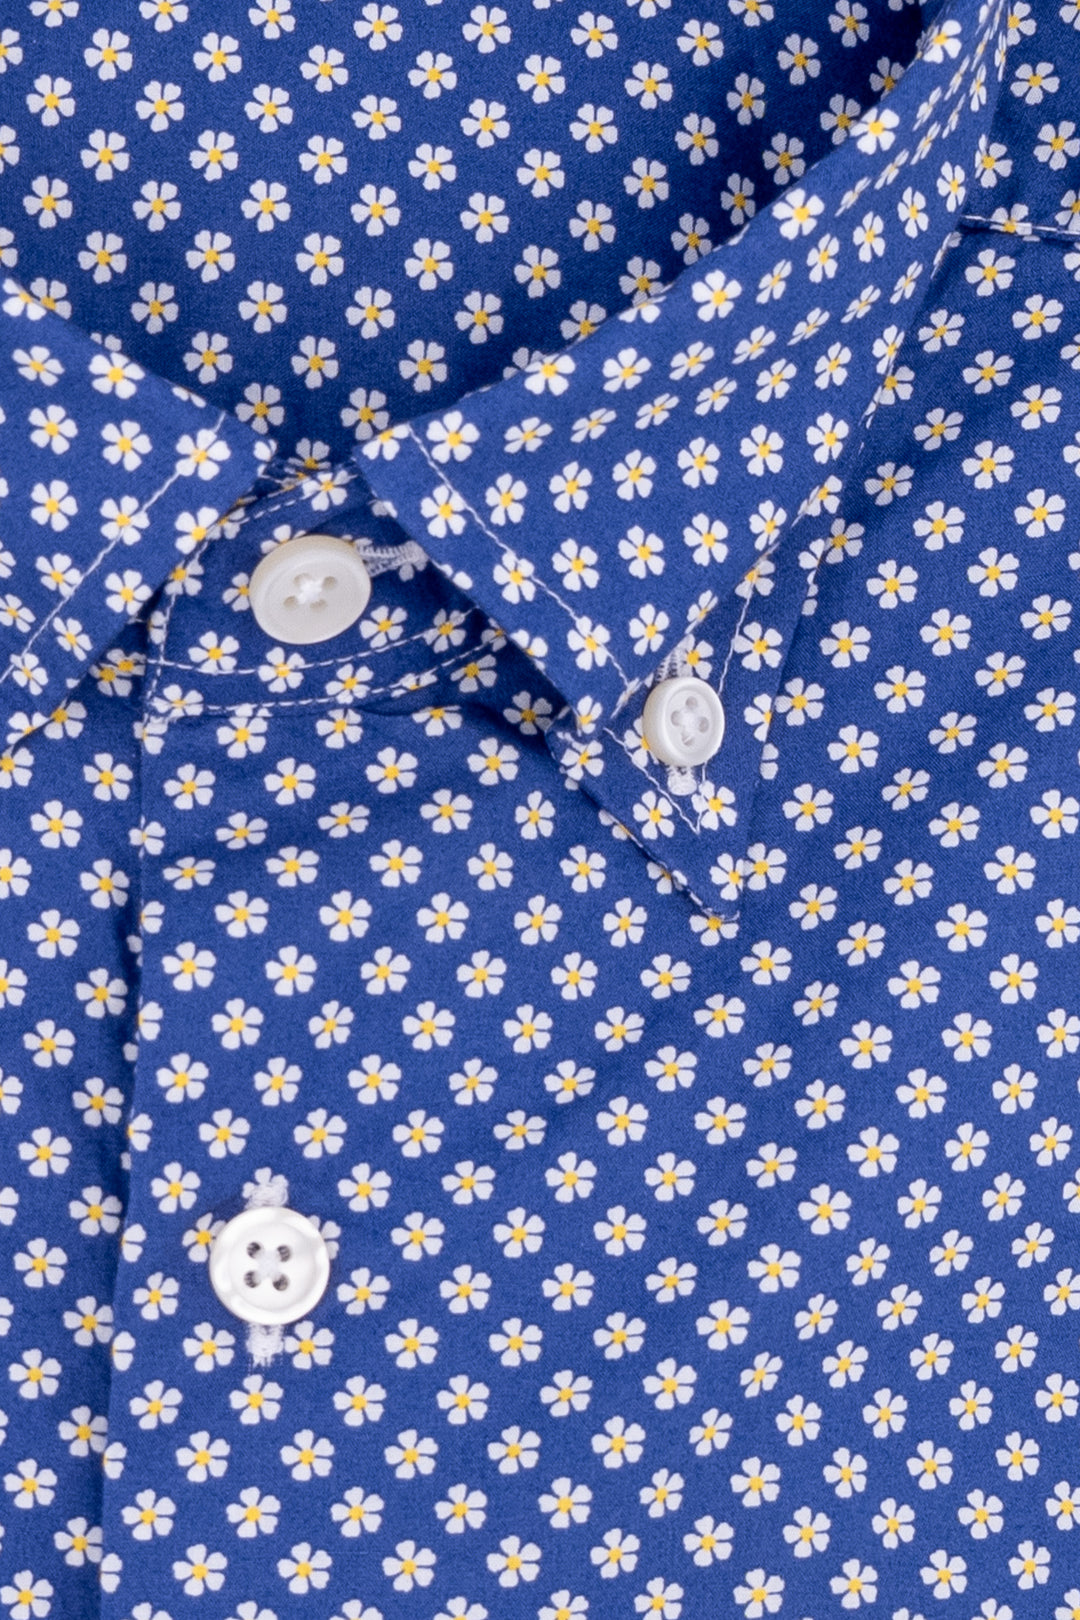 HDP Camicia slim button down blu in cotone lavato con microstampa a fiori - Mancinelli 1954